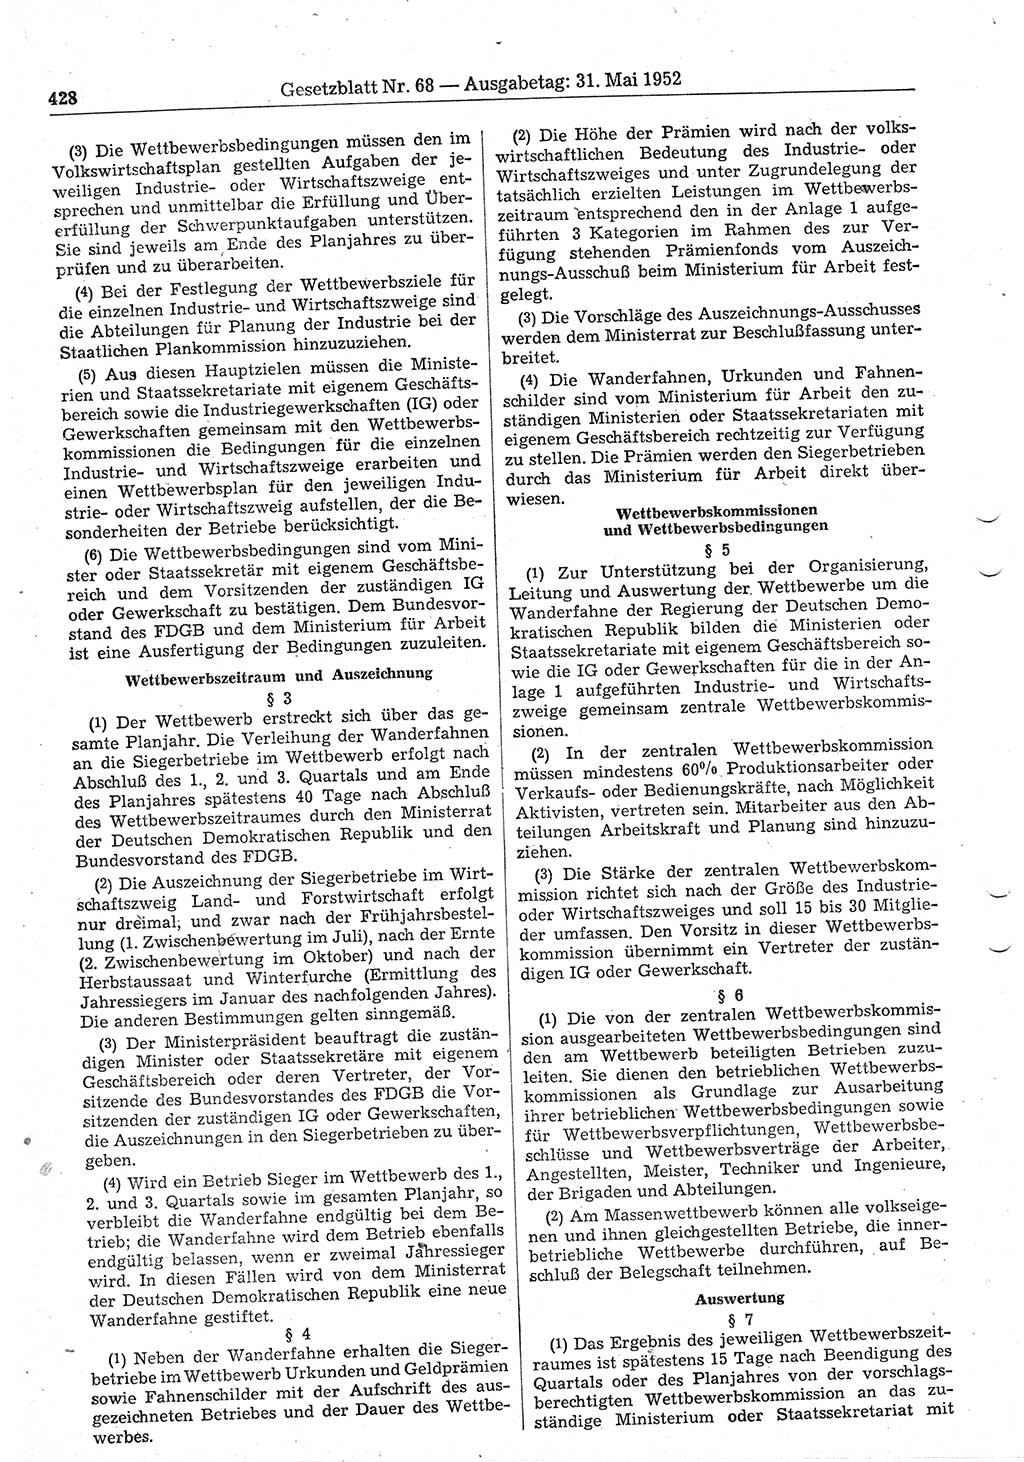 Gesetzblatt (GBl.) der Deutschen Demokratischen Republik (DDR) 1952, Seite 428 (GBl. DDR 1952, S. 428)